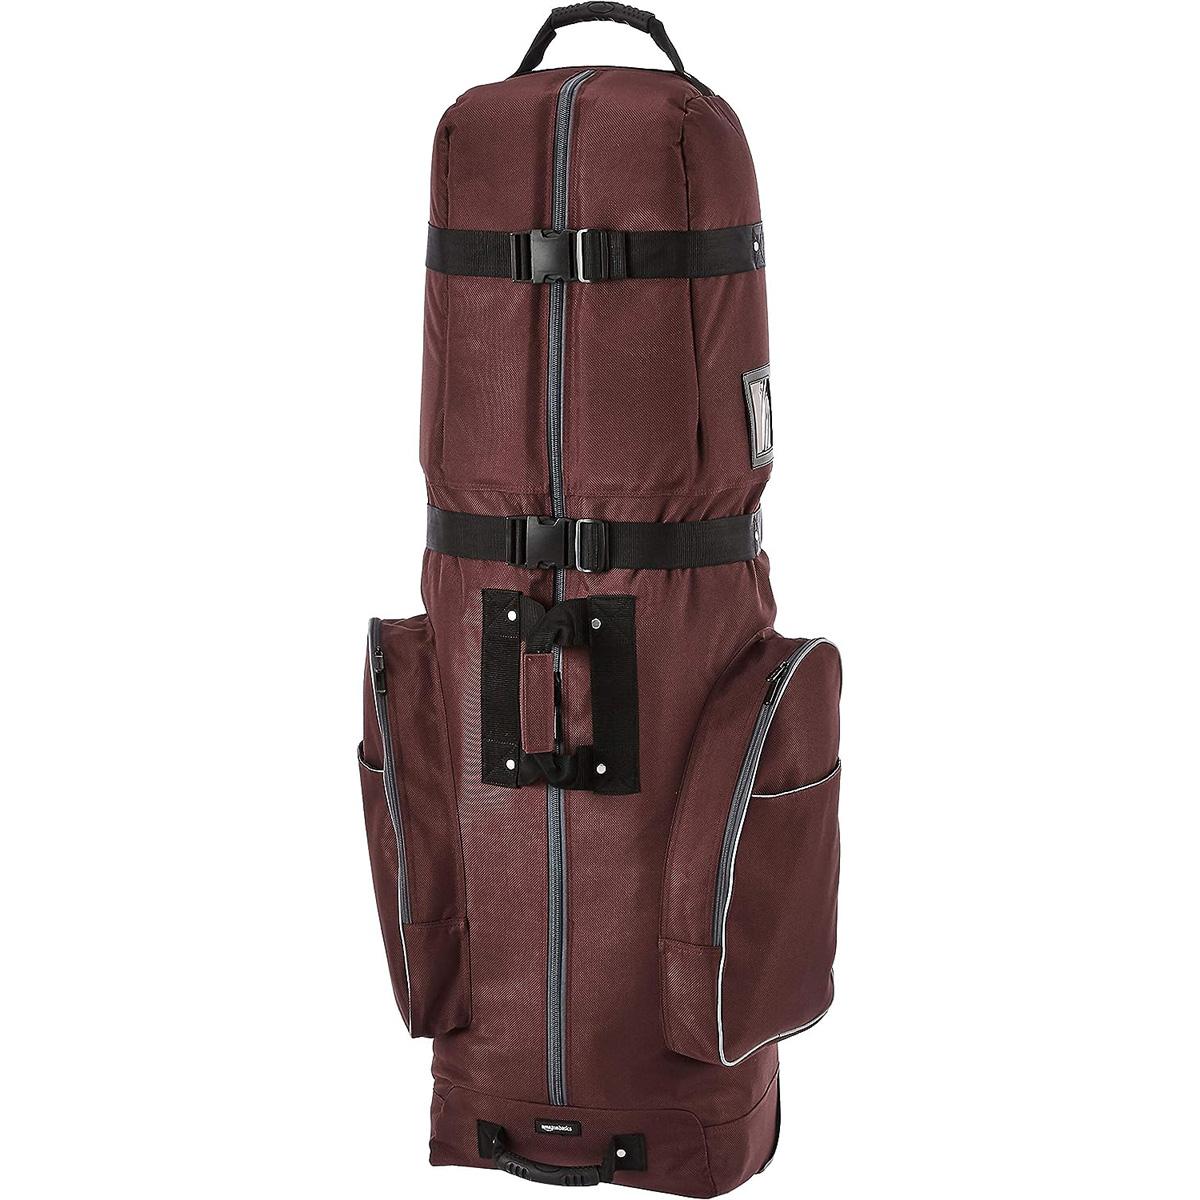 Amazon Basics Soft-Sided Golf Travel Bag Maroon for $15.38